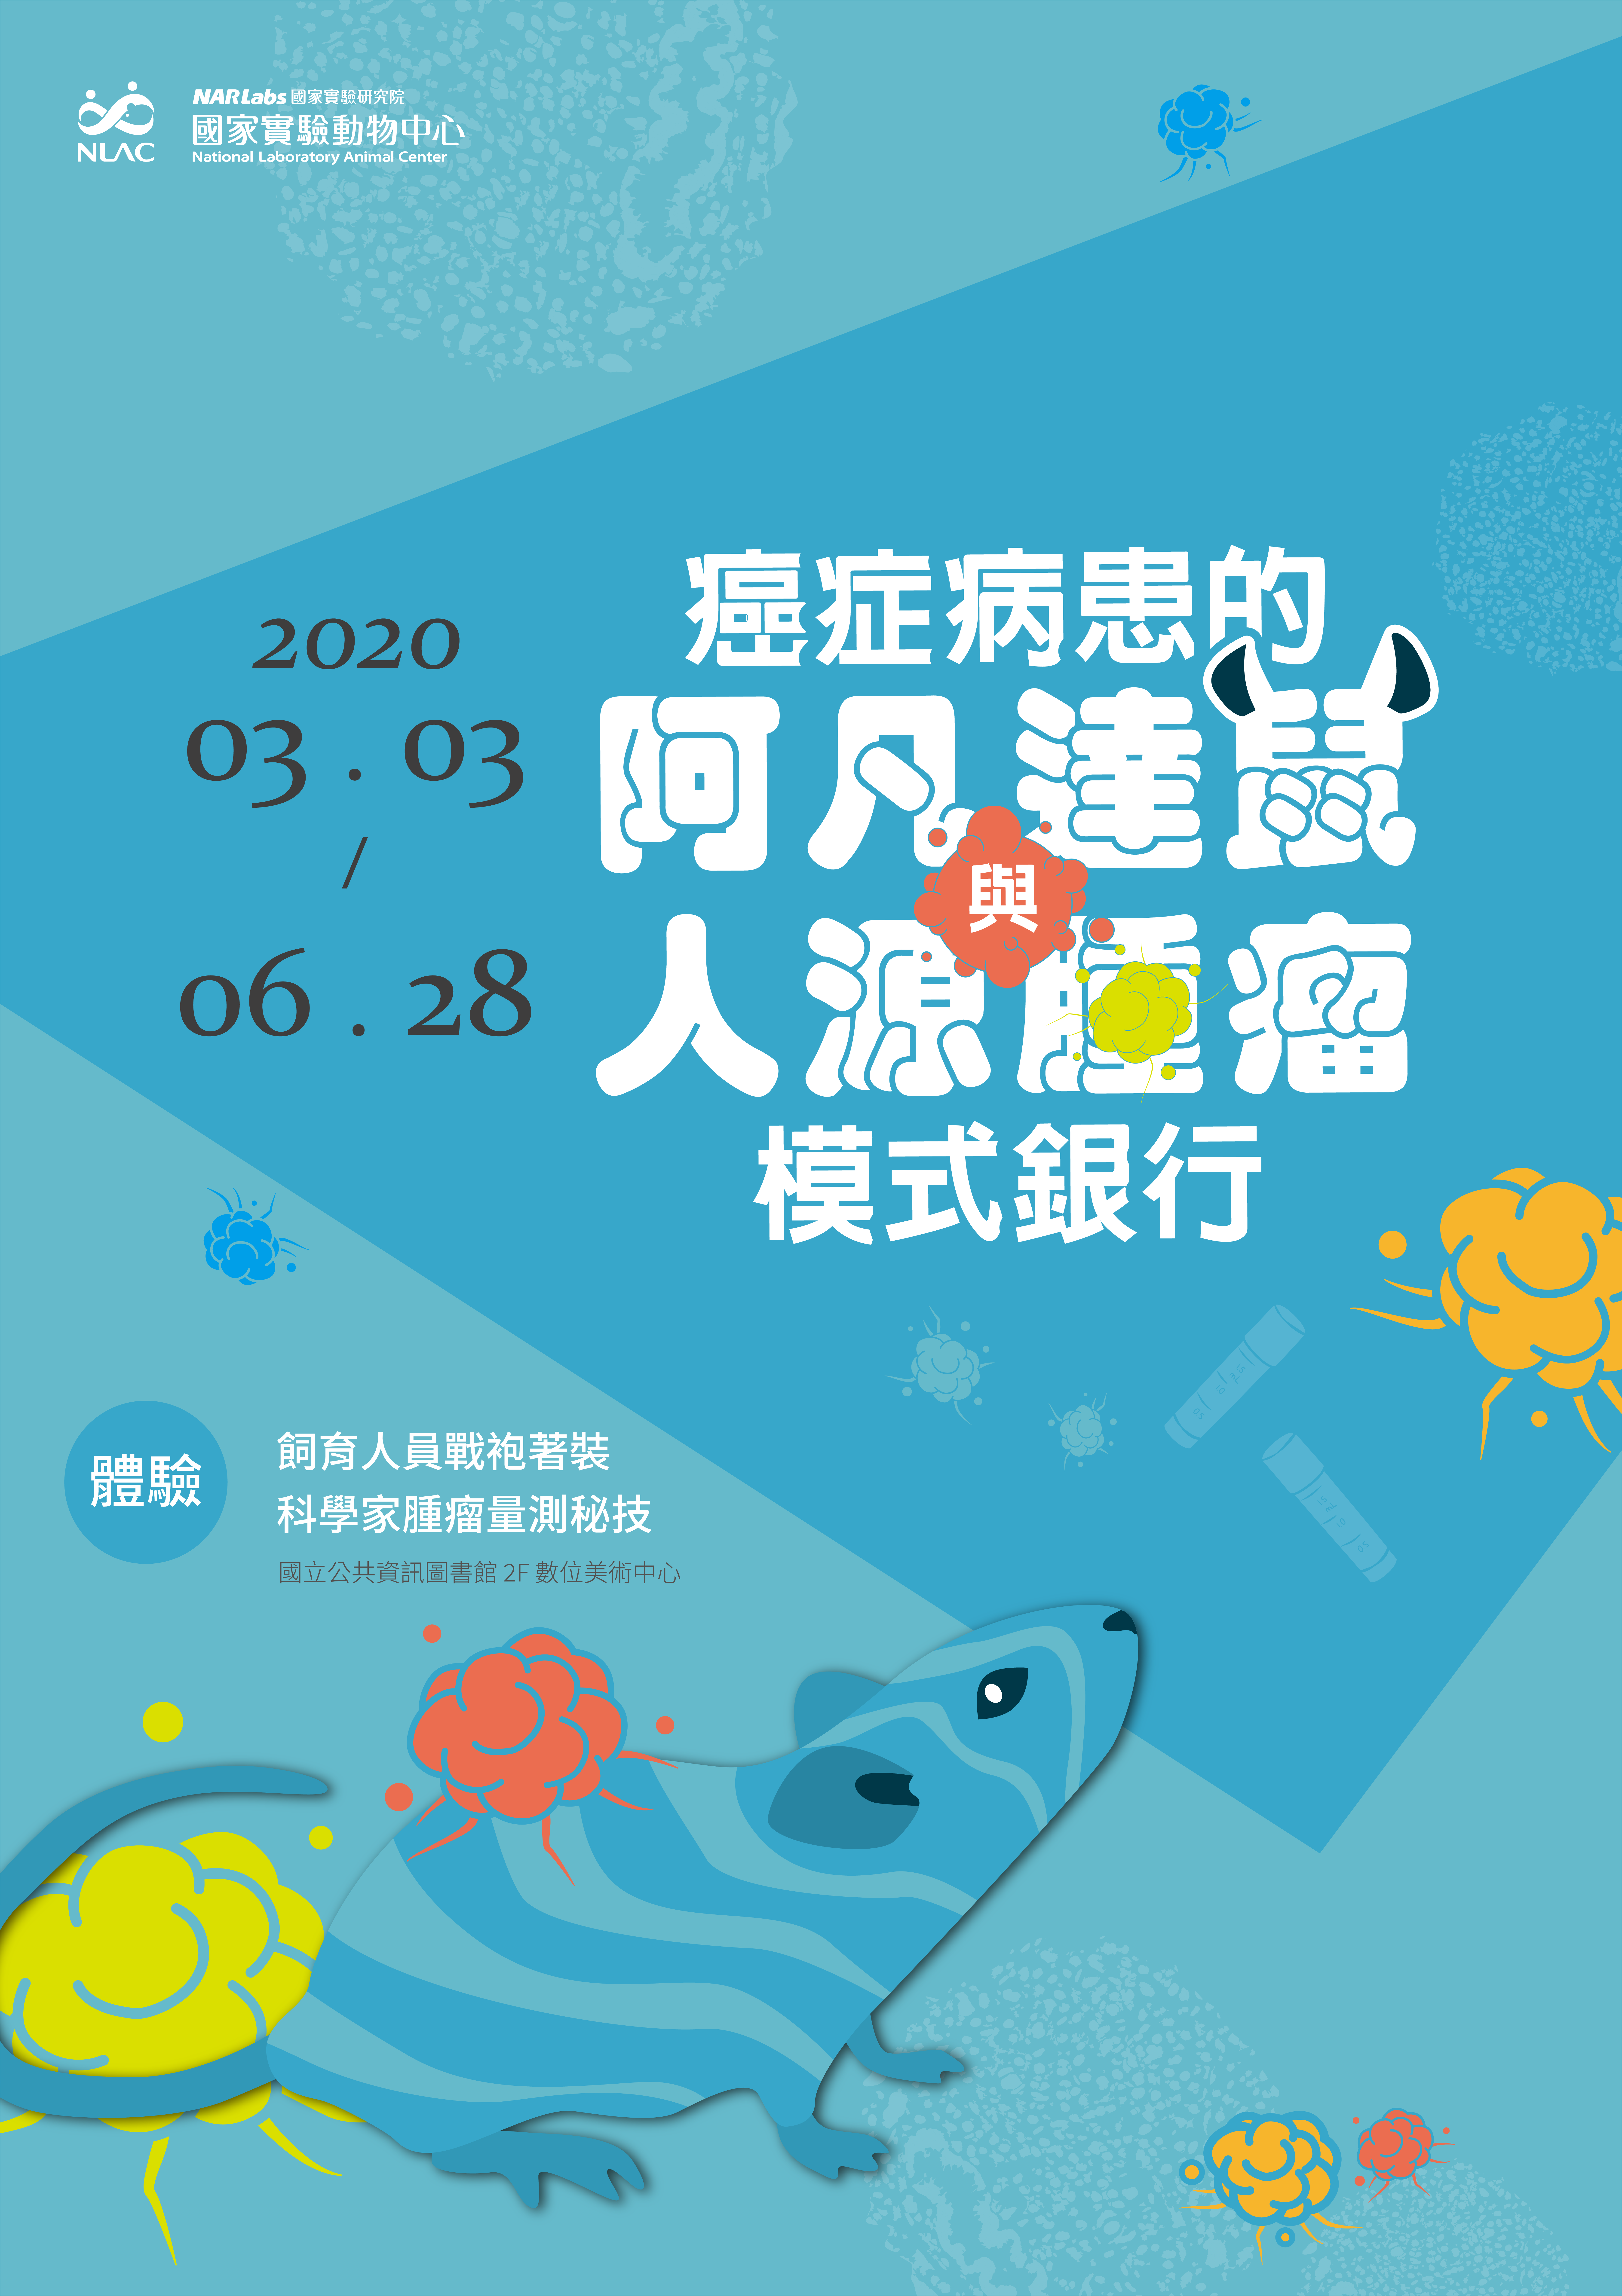 2020年3月3日至6月28日阿凡達鼠與人源腫瘤模式銀行特展，在台中國資圖展出